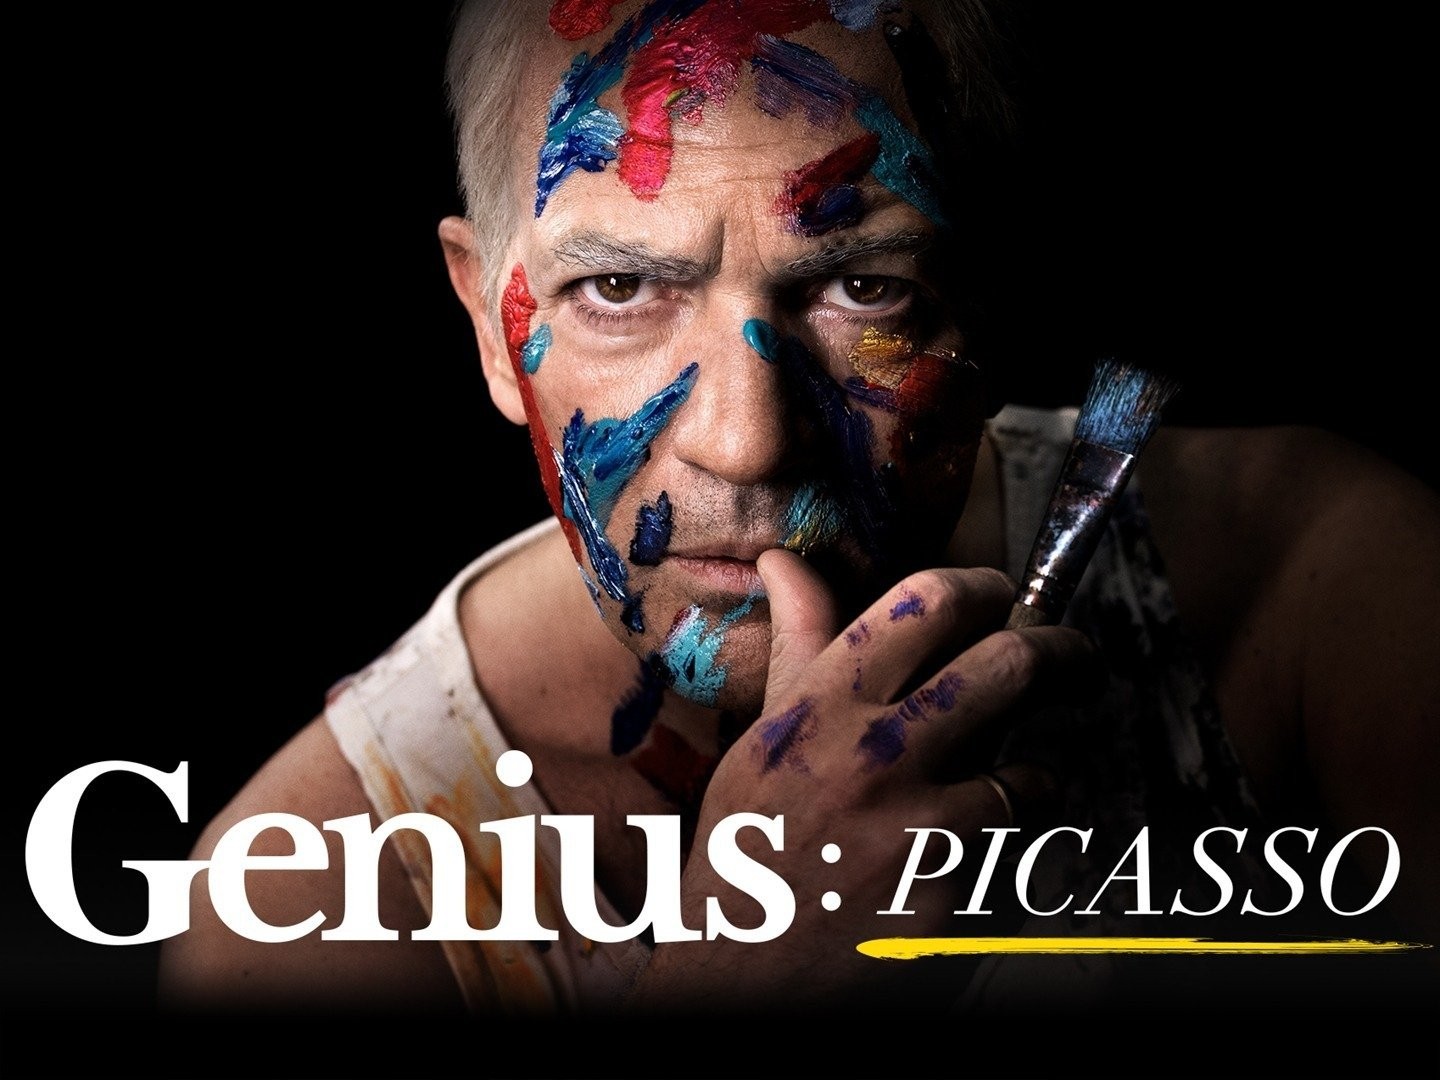 Pablo Picasso - Geniuses